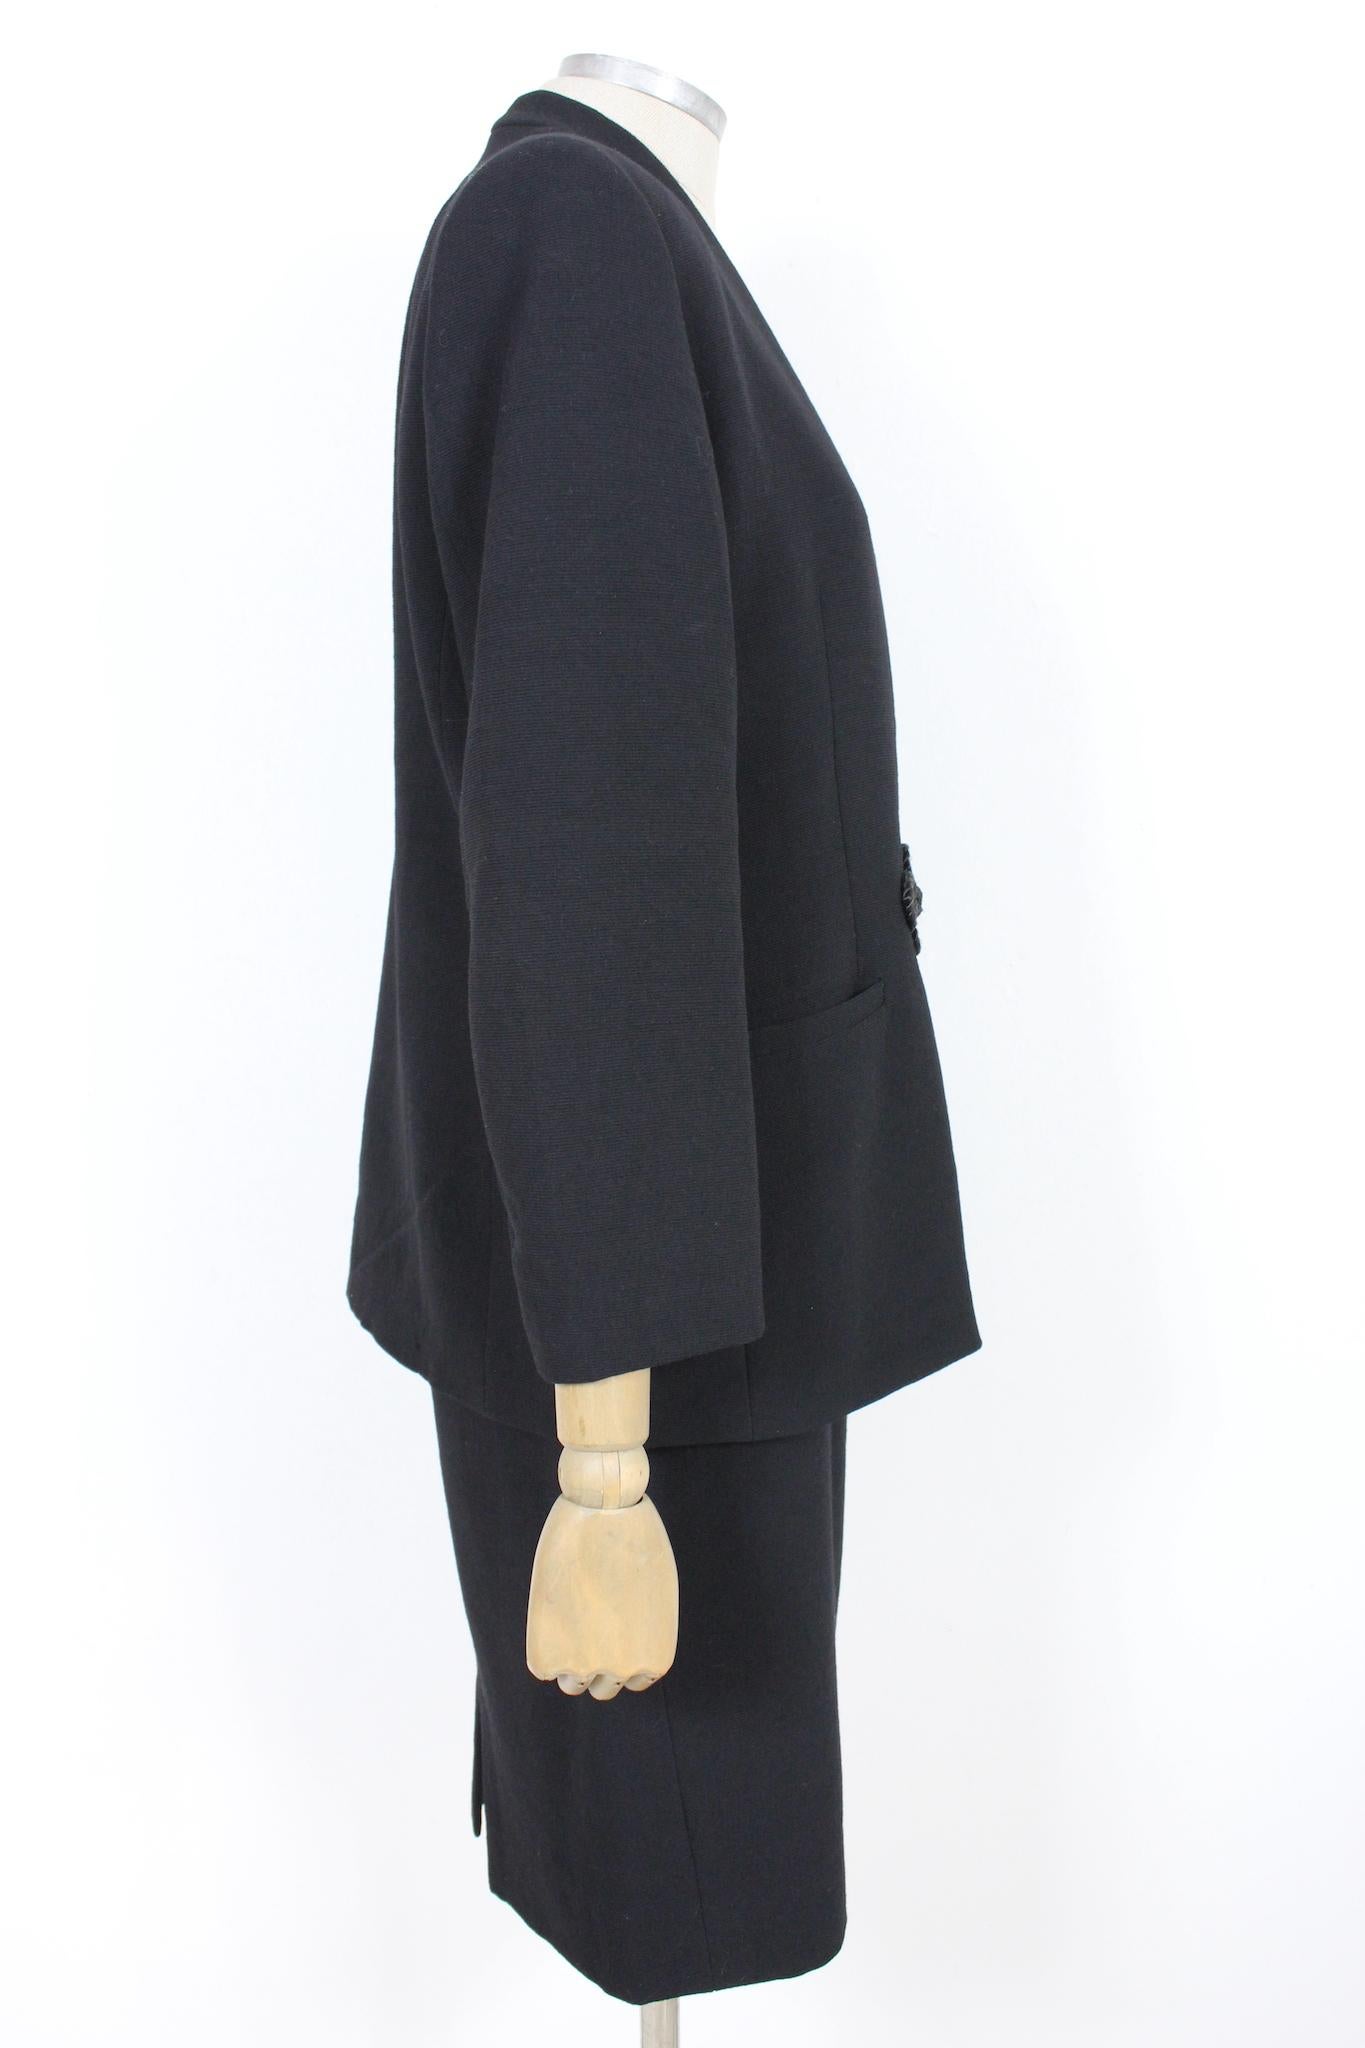 Noir Pierre Cardin - Tailleur jupe noire élégante, années 1980 en vente